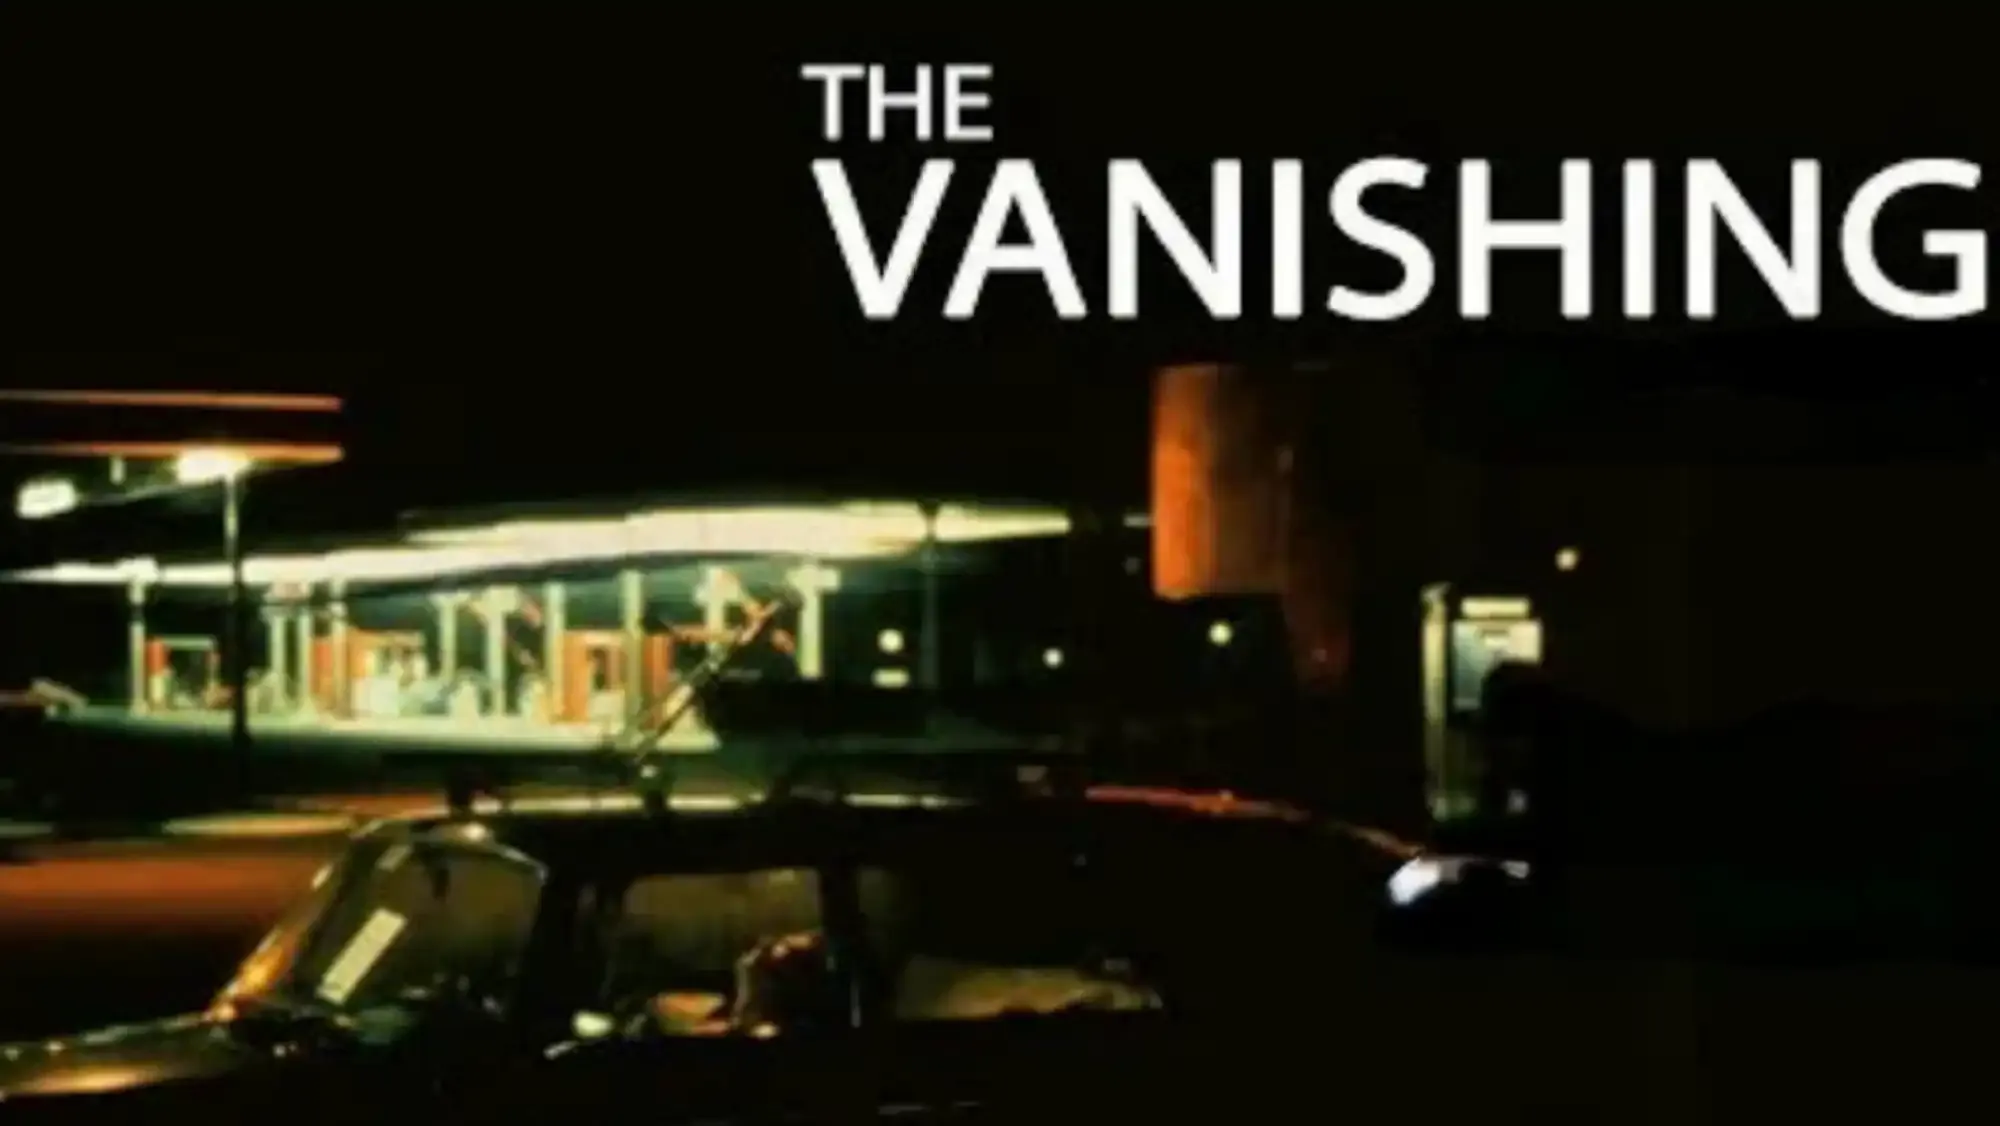 The Vanishing movie review